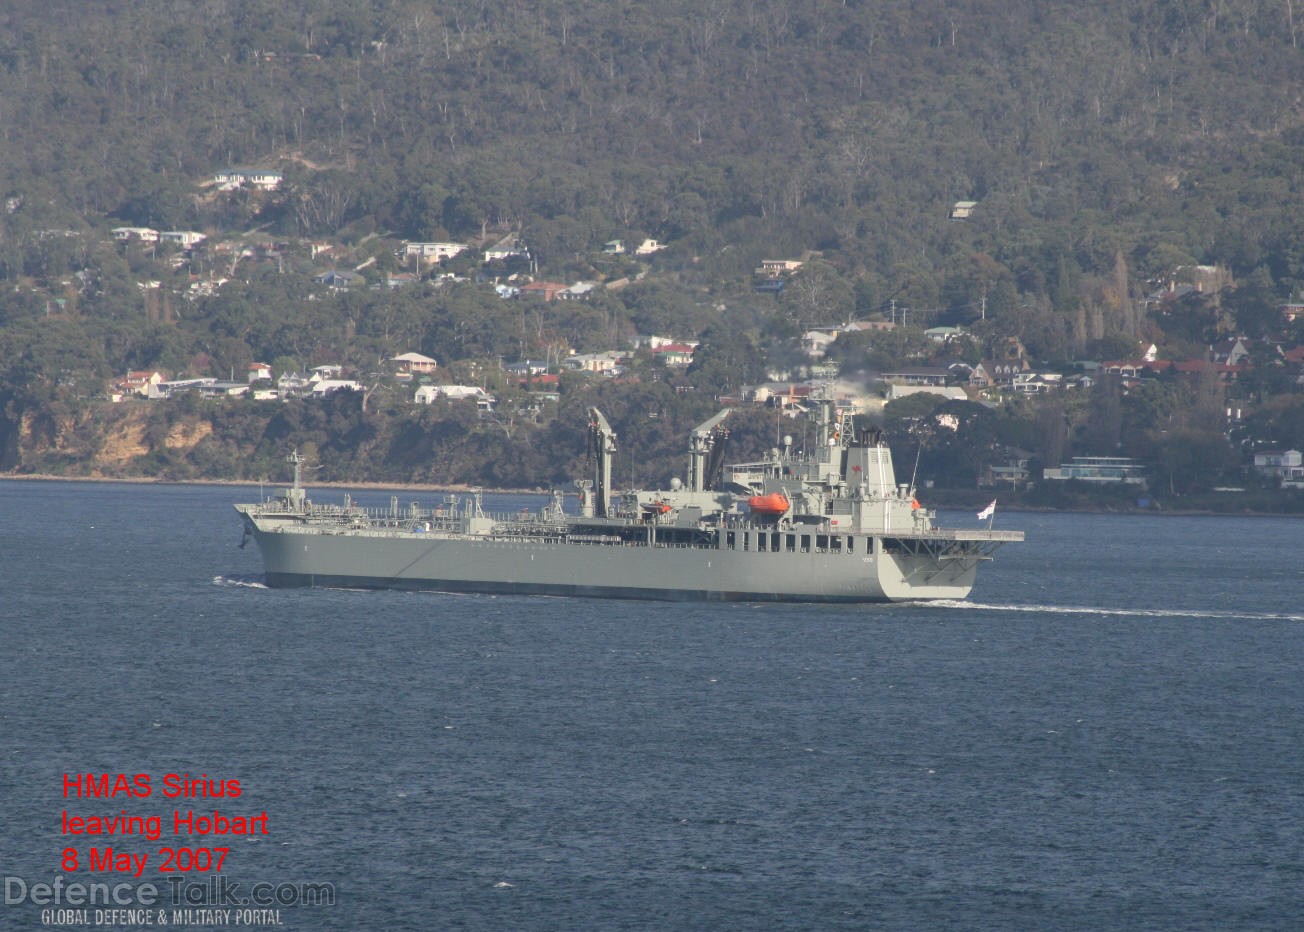 HMAS Sirius leaving Hobart 8 May 2007